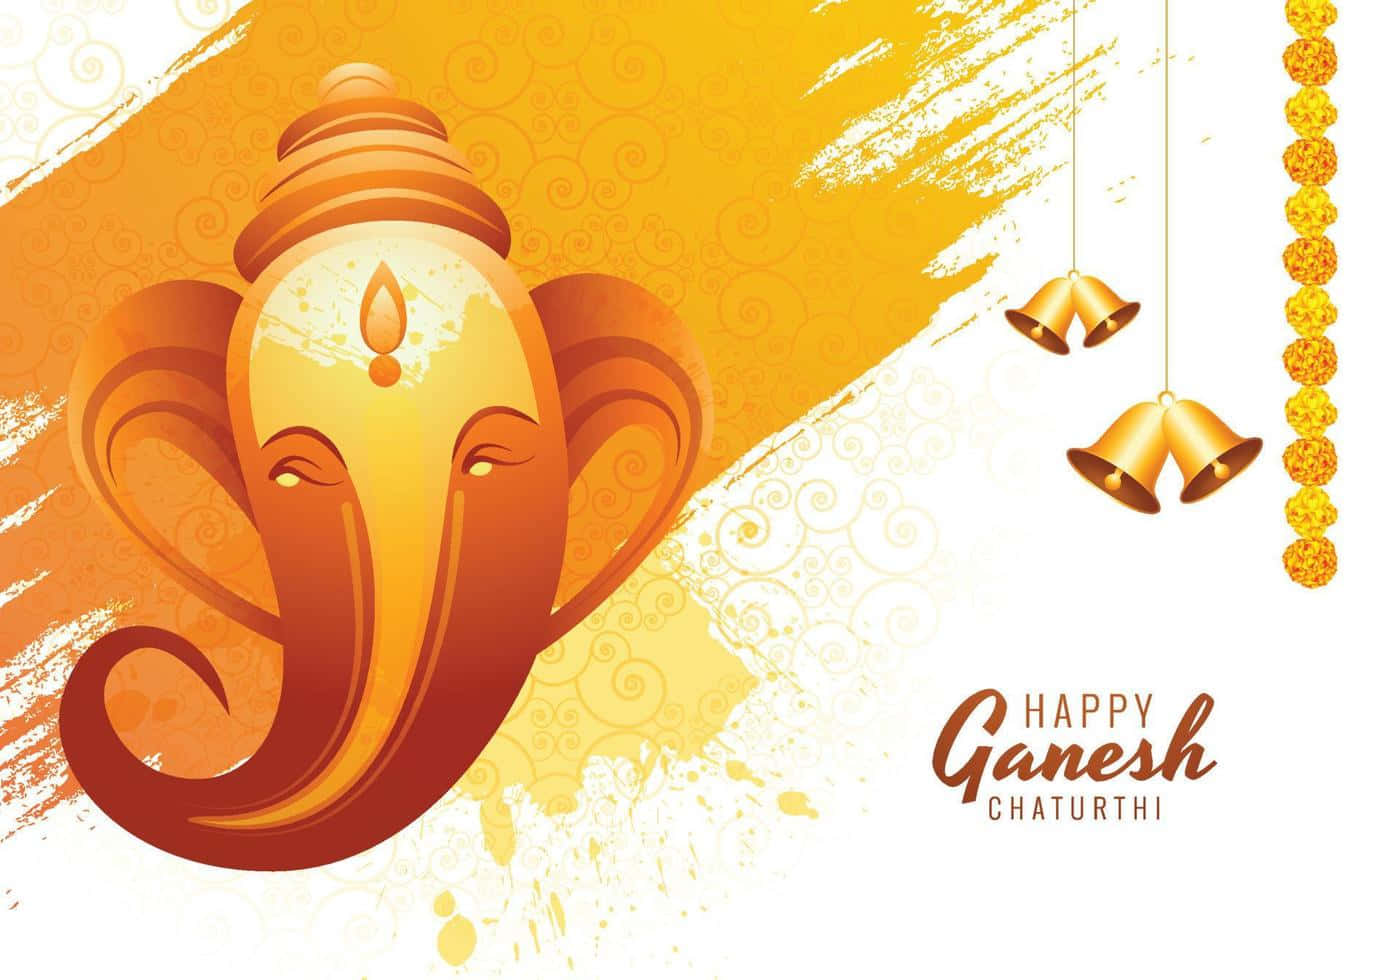 Feiernvon Ganesh Chaturthi